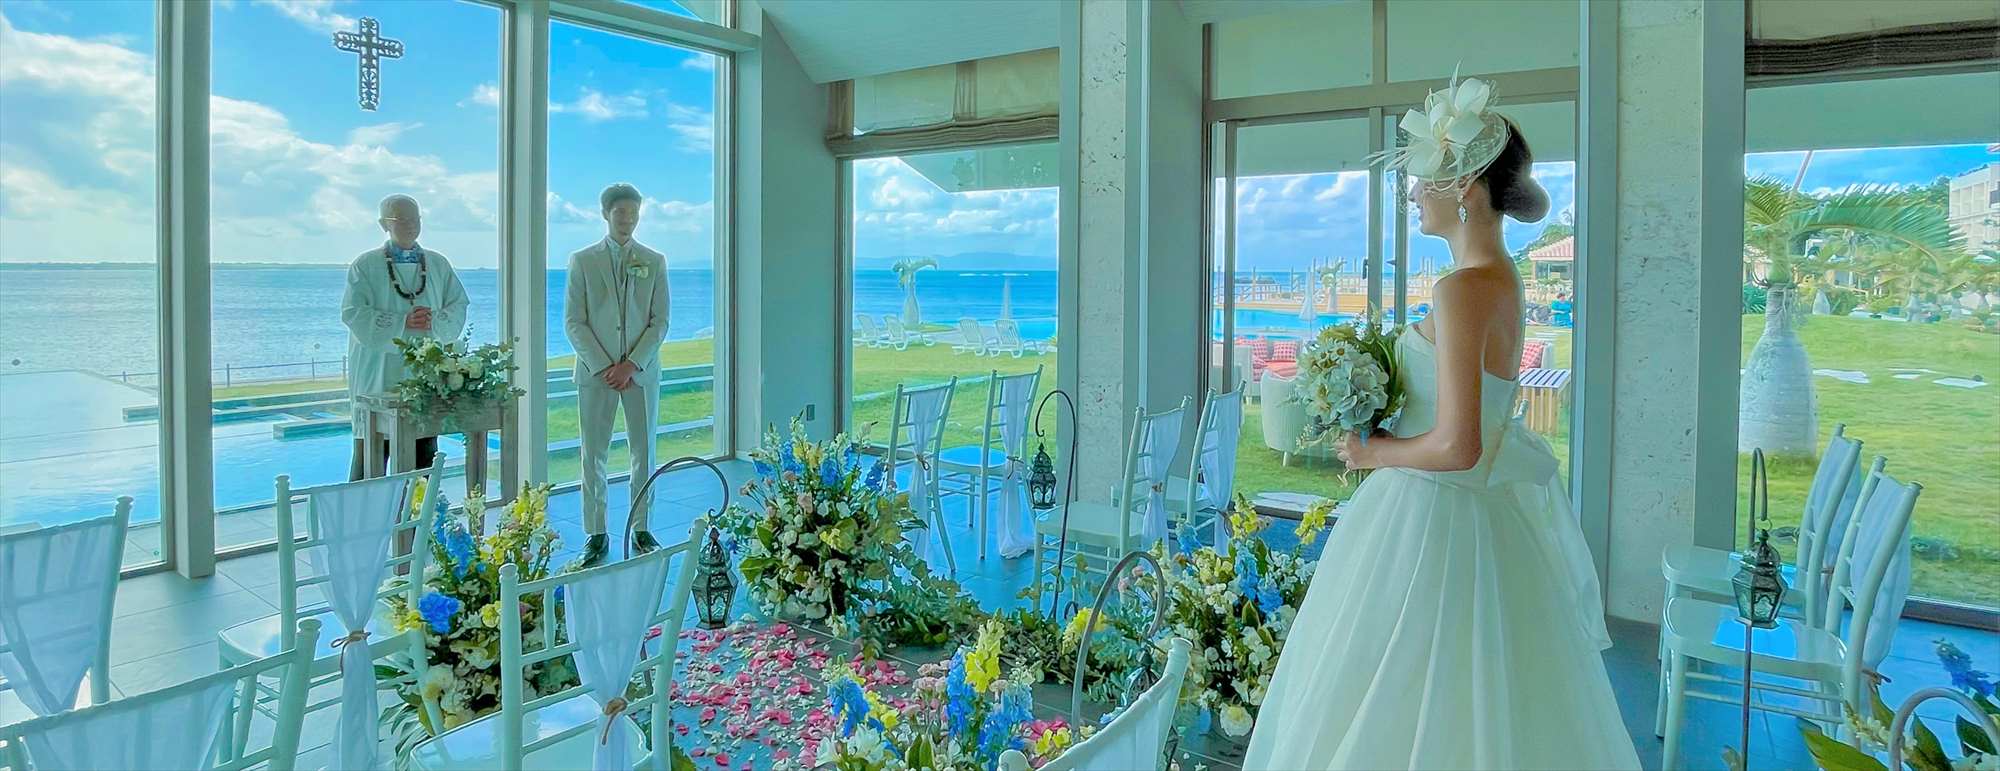 沖縄石垣島チャペル・ウェディング Beach Hotel Sunshine Ishigakijima Chapel Wedding 石垣島ビーチホテル・サンシャイン挙式